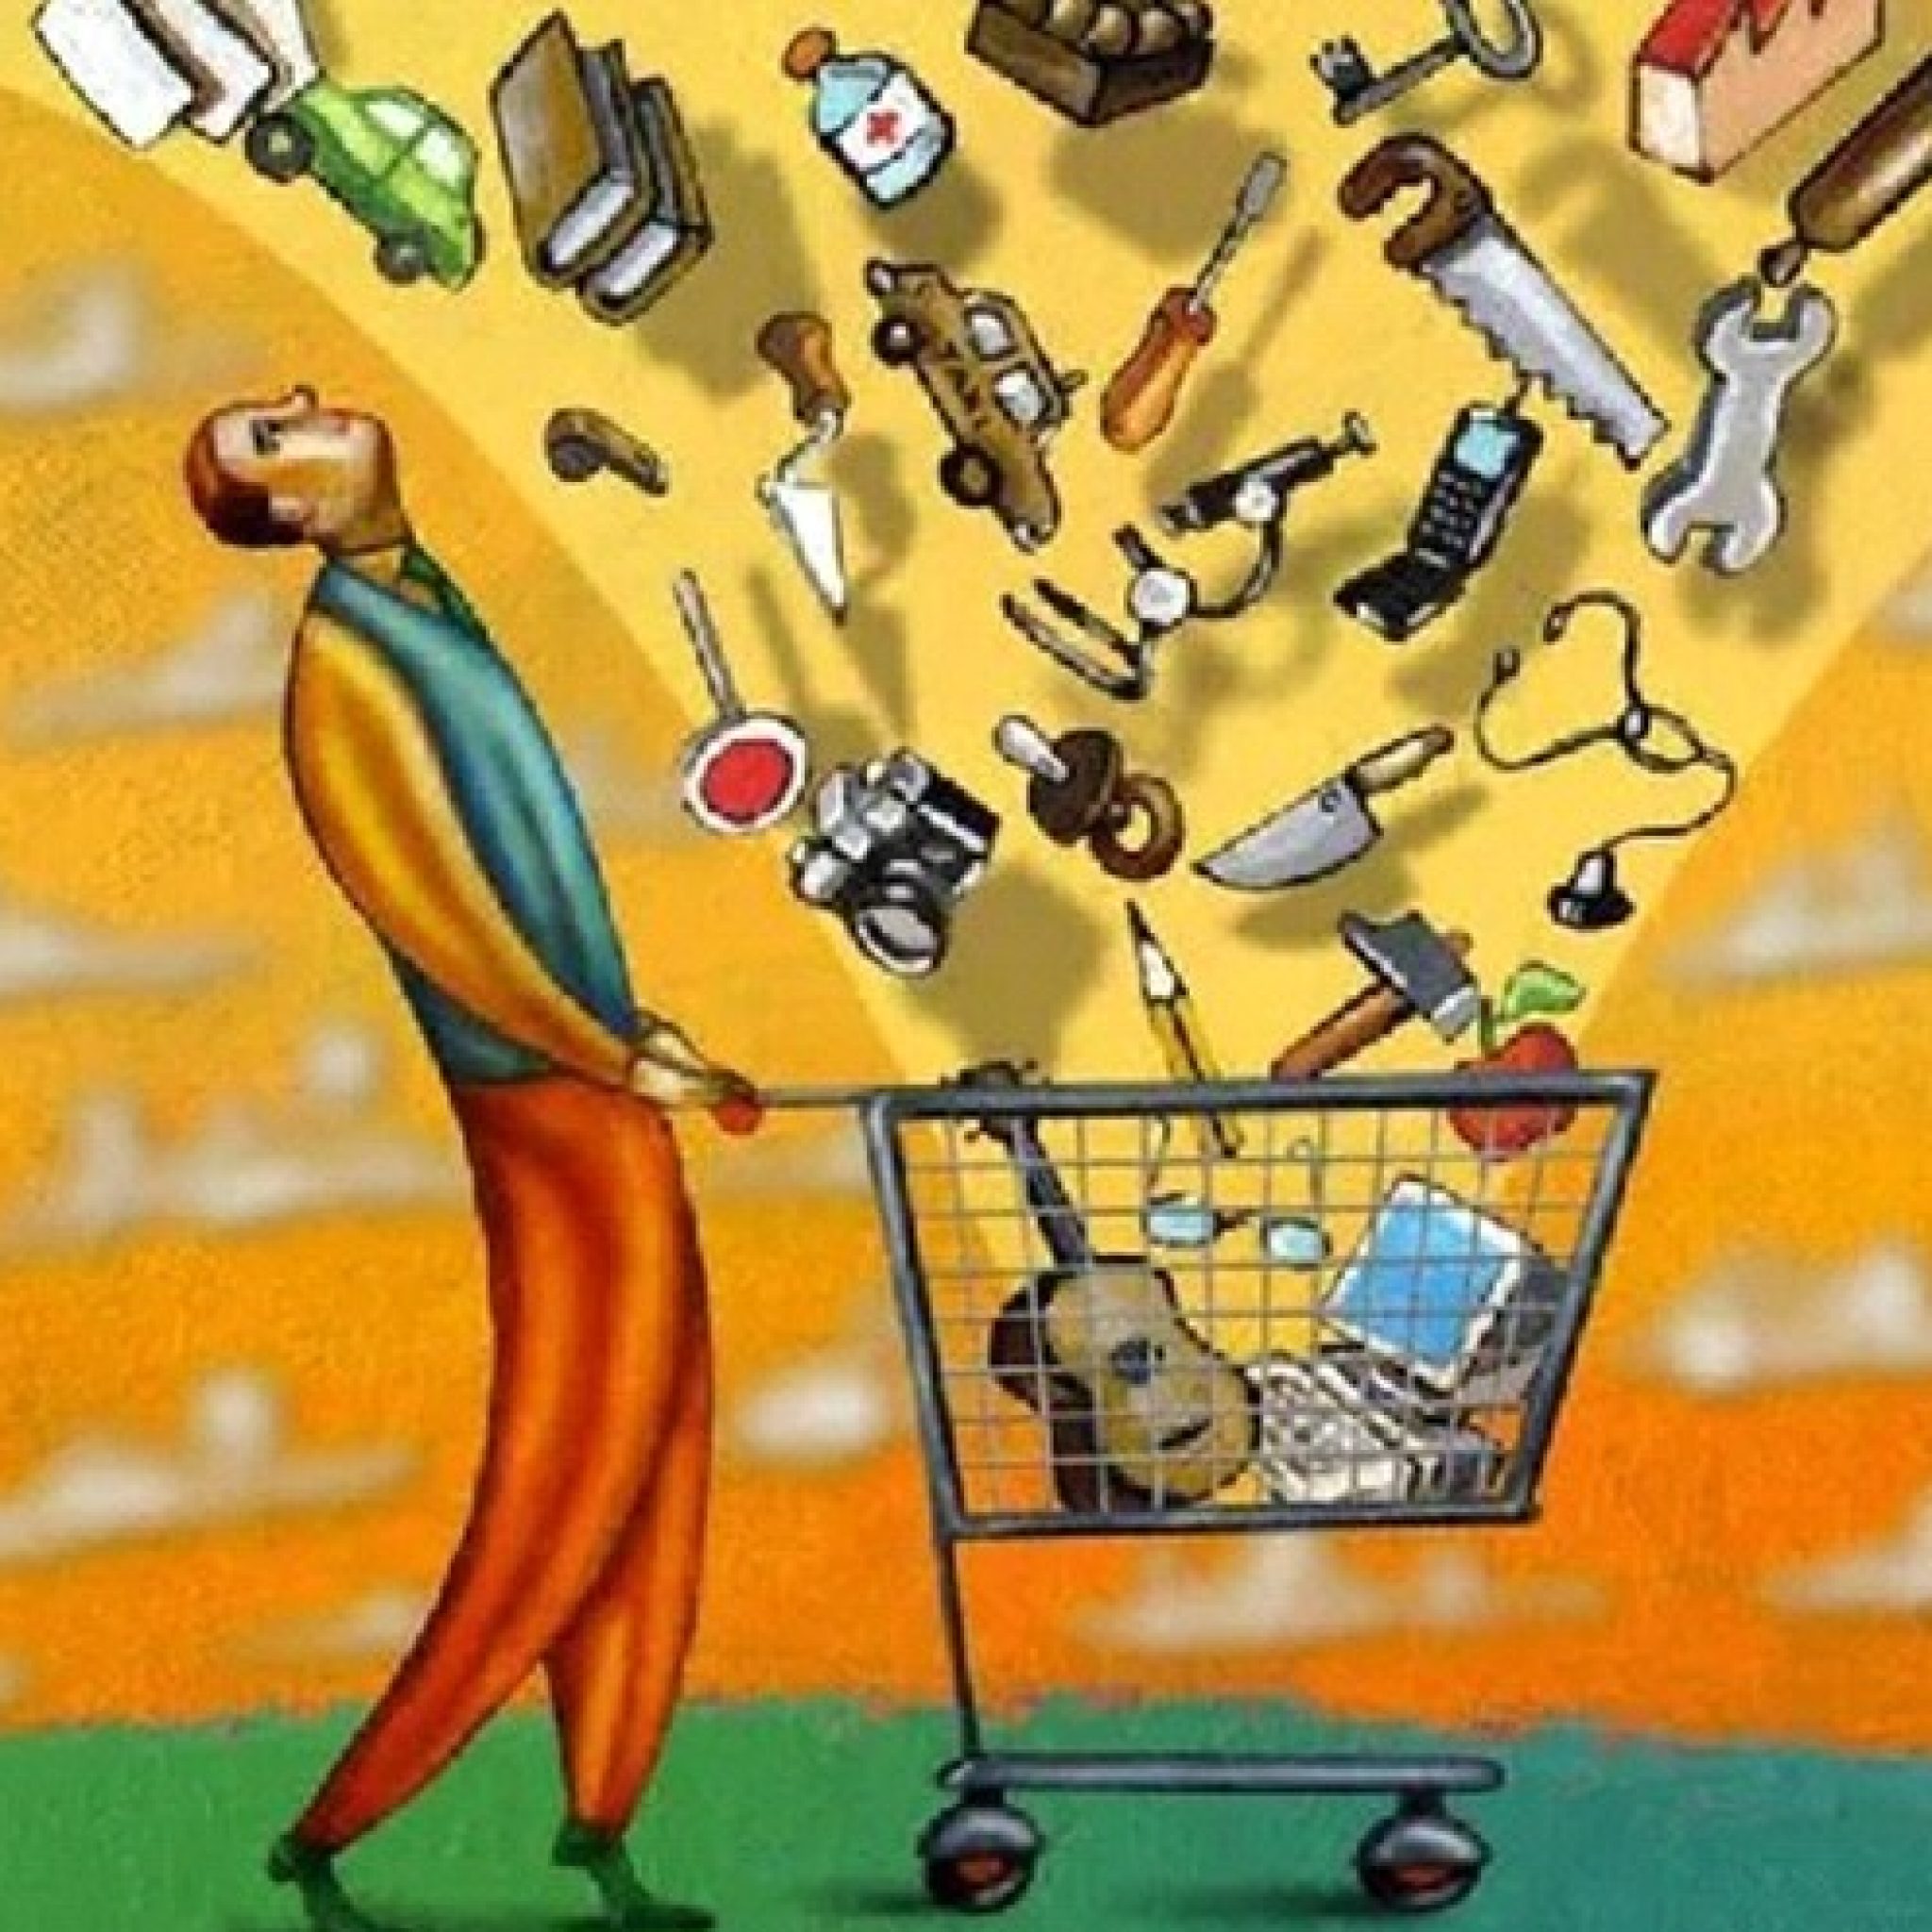 Удовлетворения материальных и иных потребностей. Человек потребитель. Общество потребления. Общество потребления иллюстрации. Плакат общество потребления.